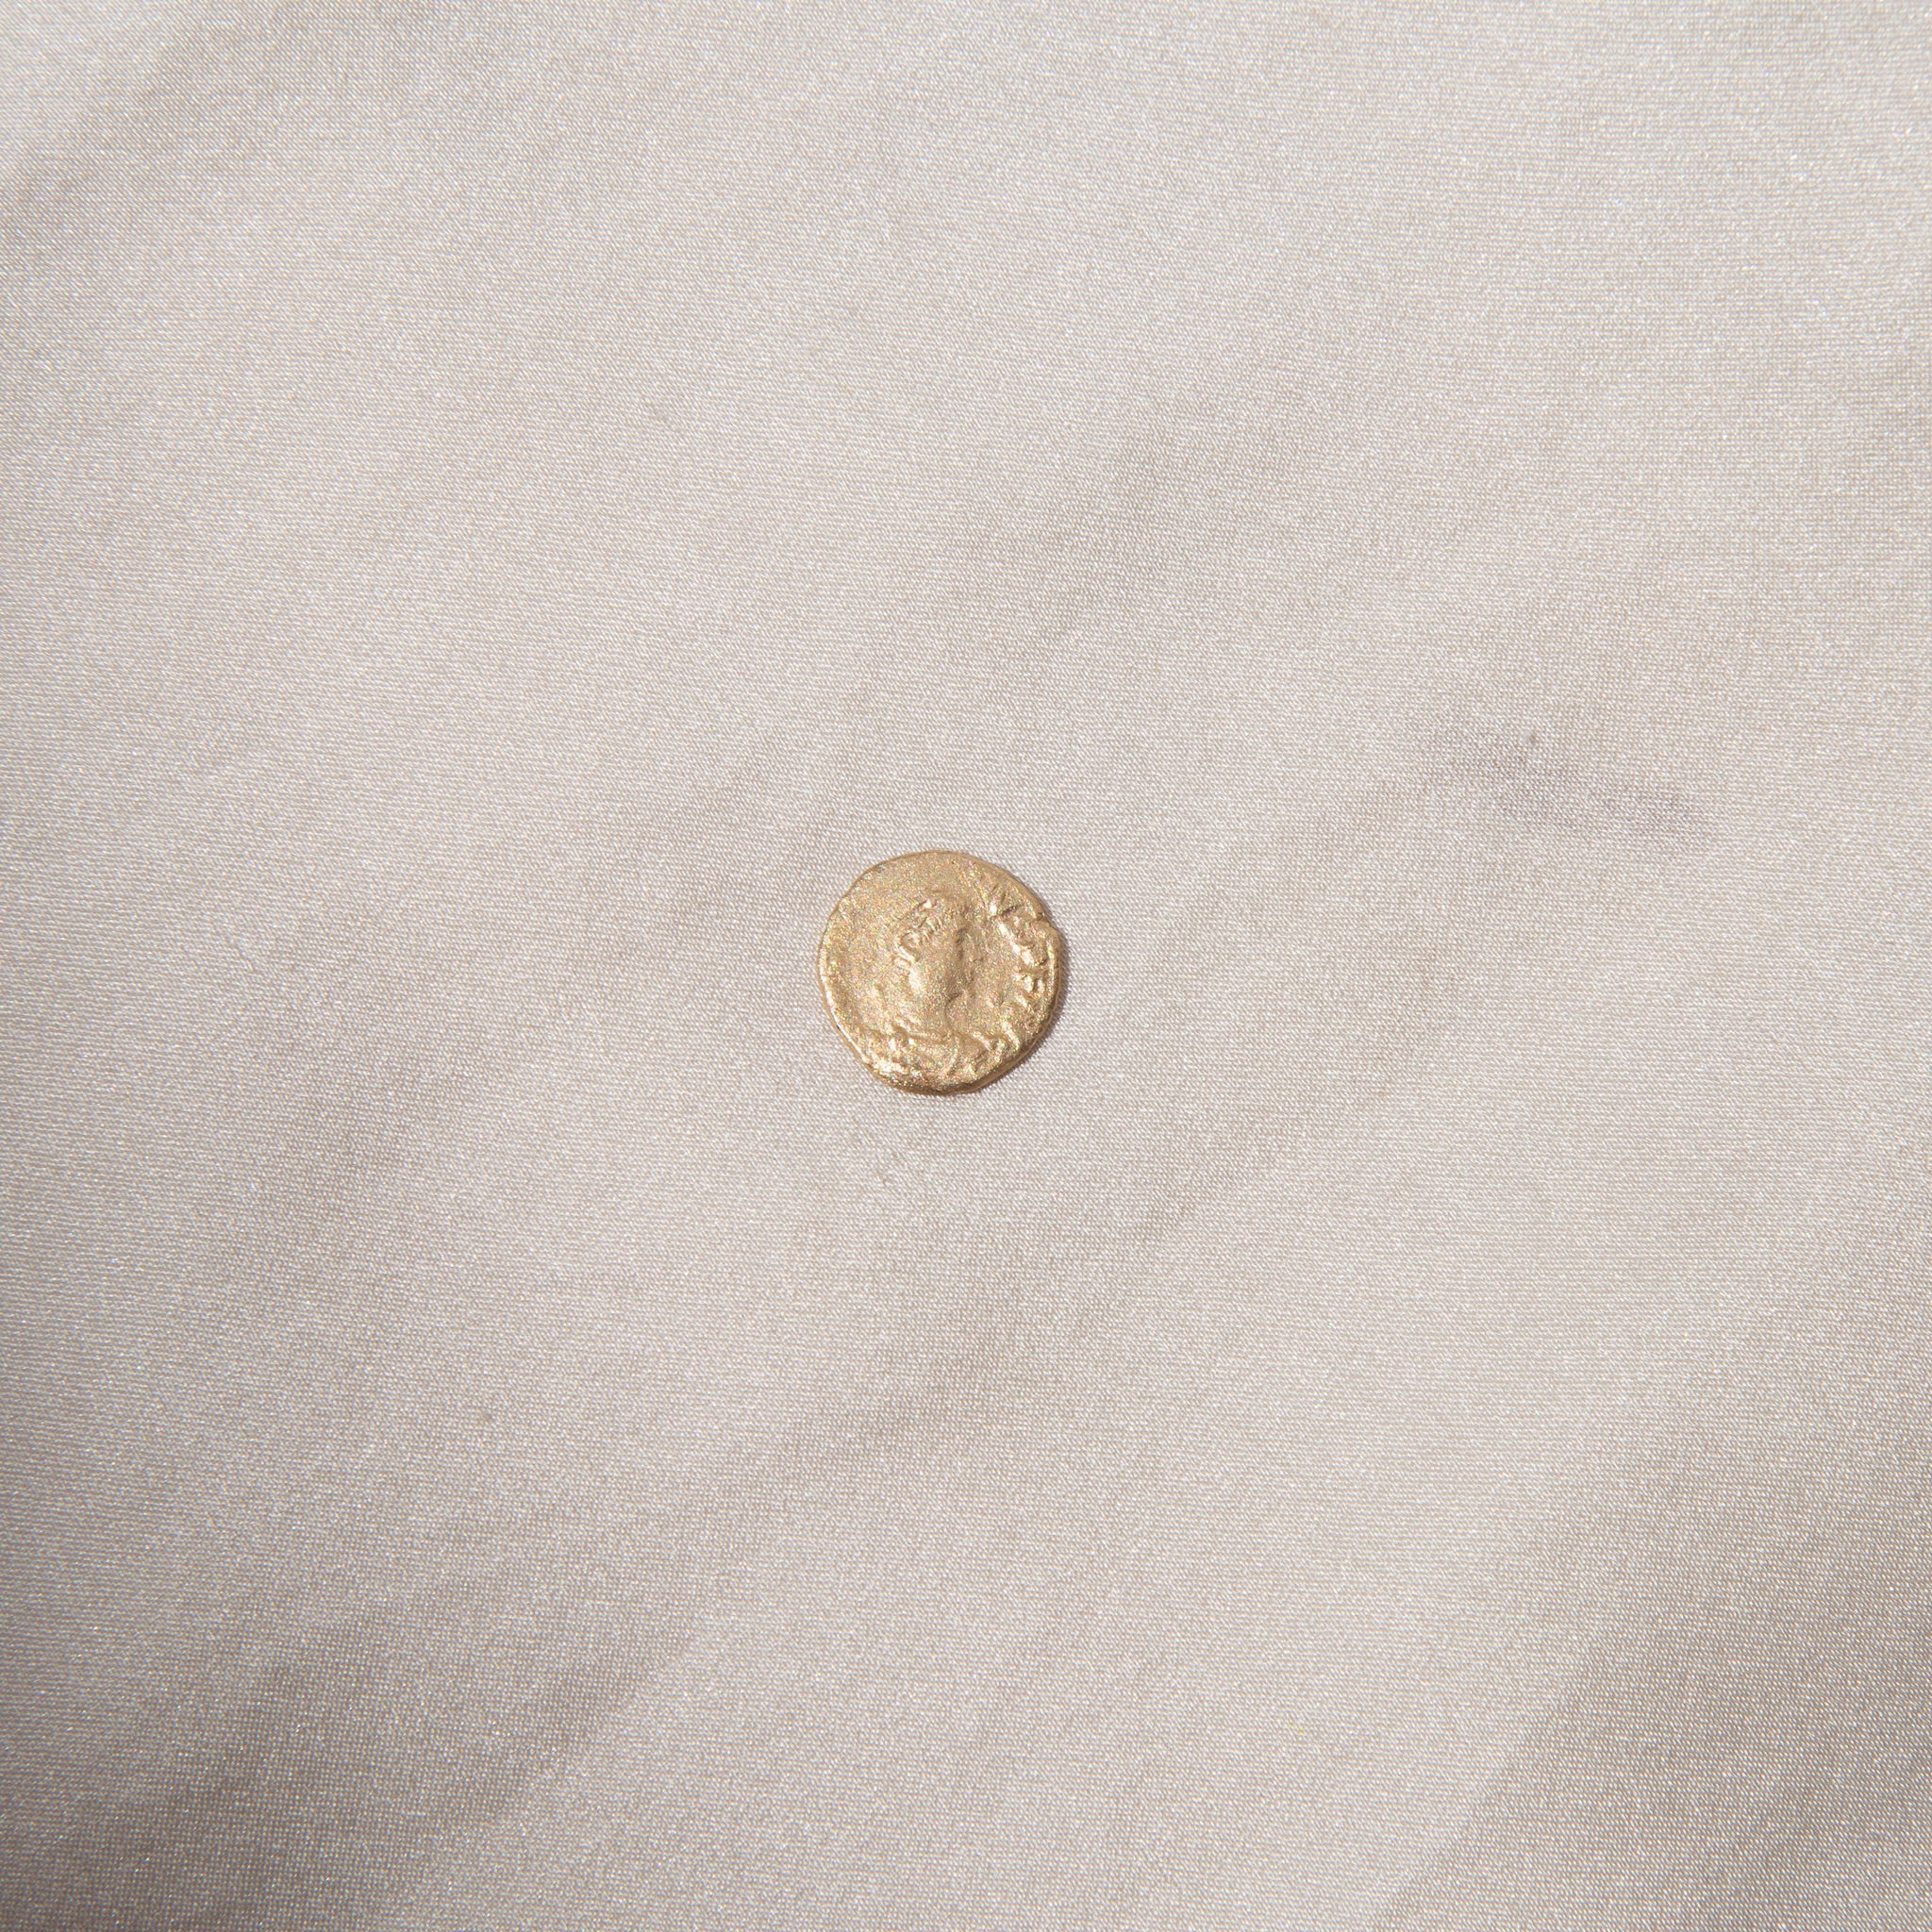 Castaway Coins Gold